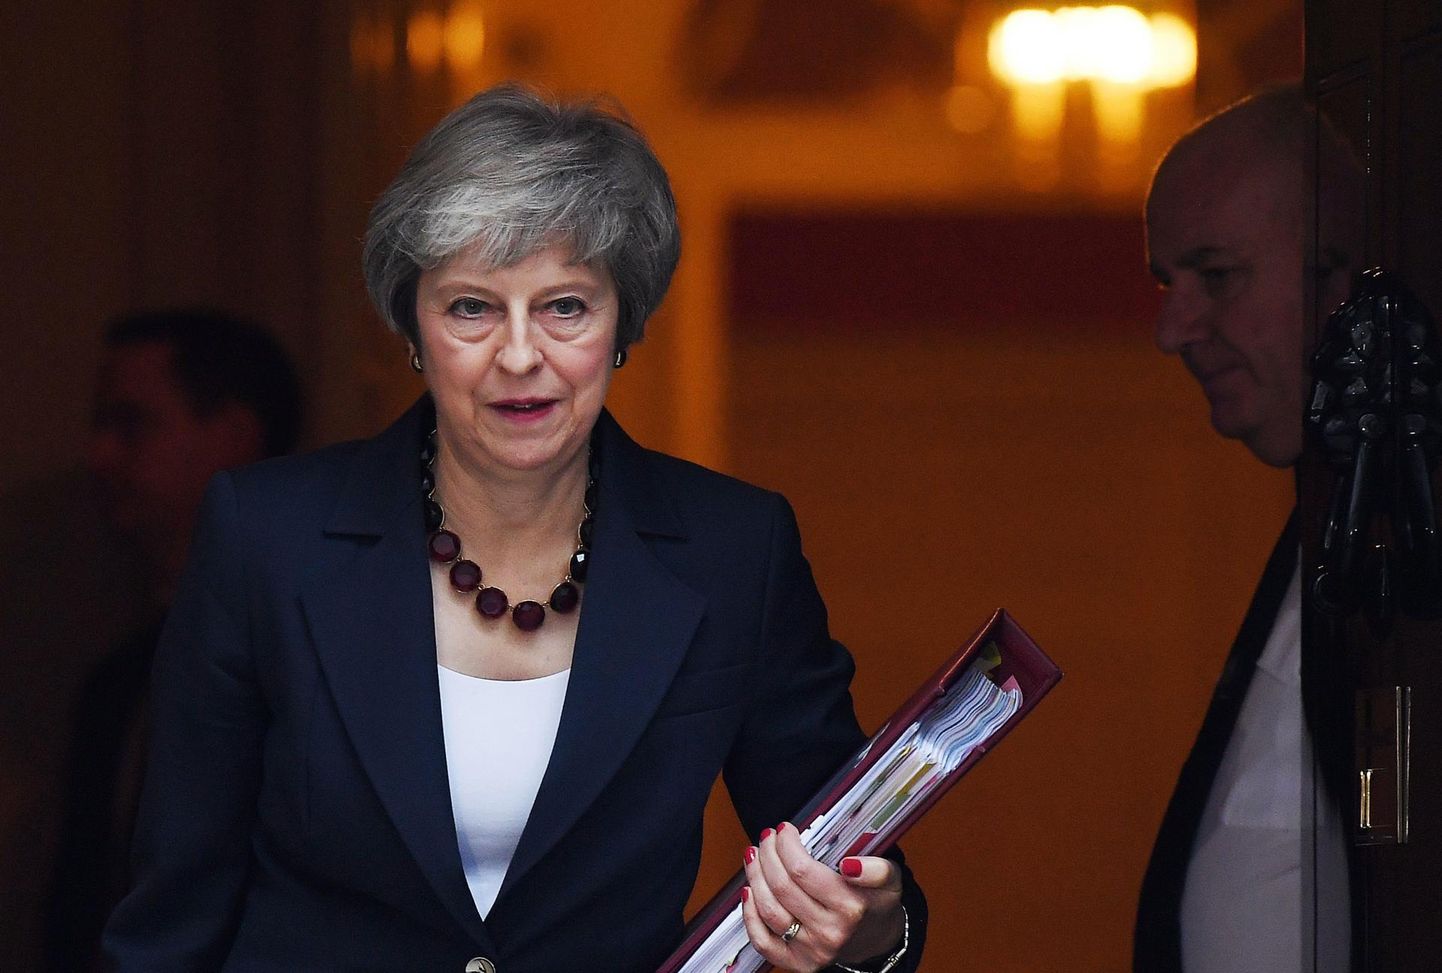 Briti peaminister Theresa May eile teel valitsuse koosolekule.